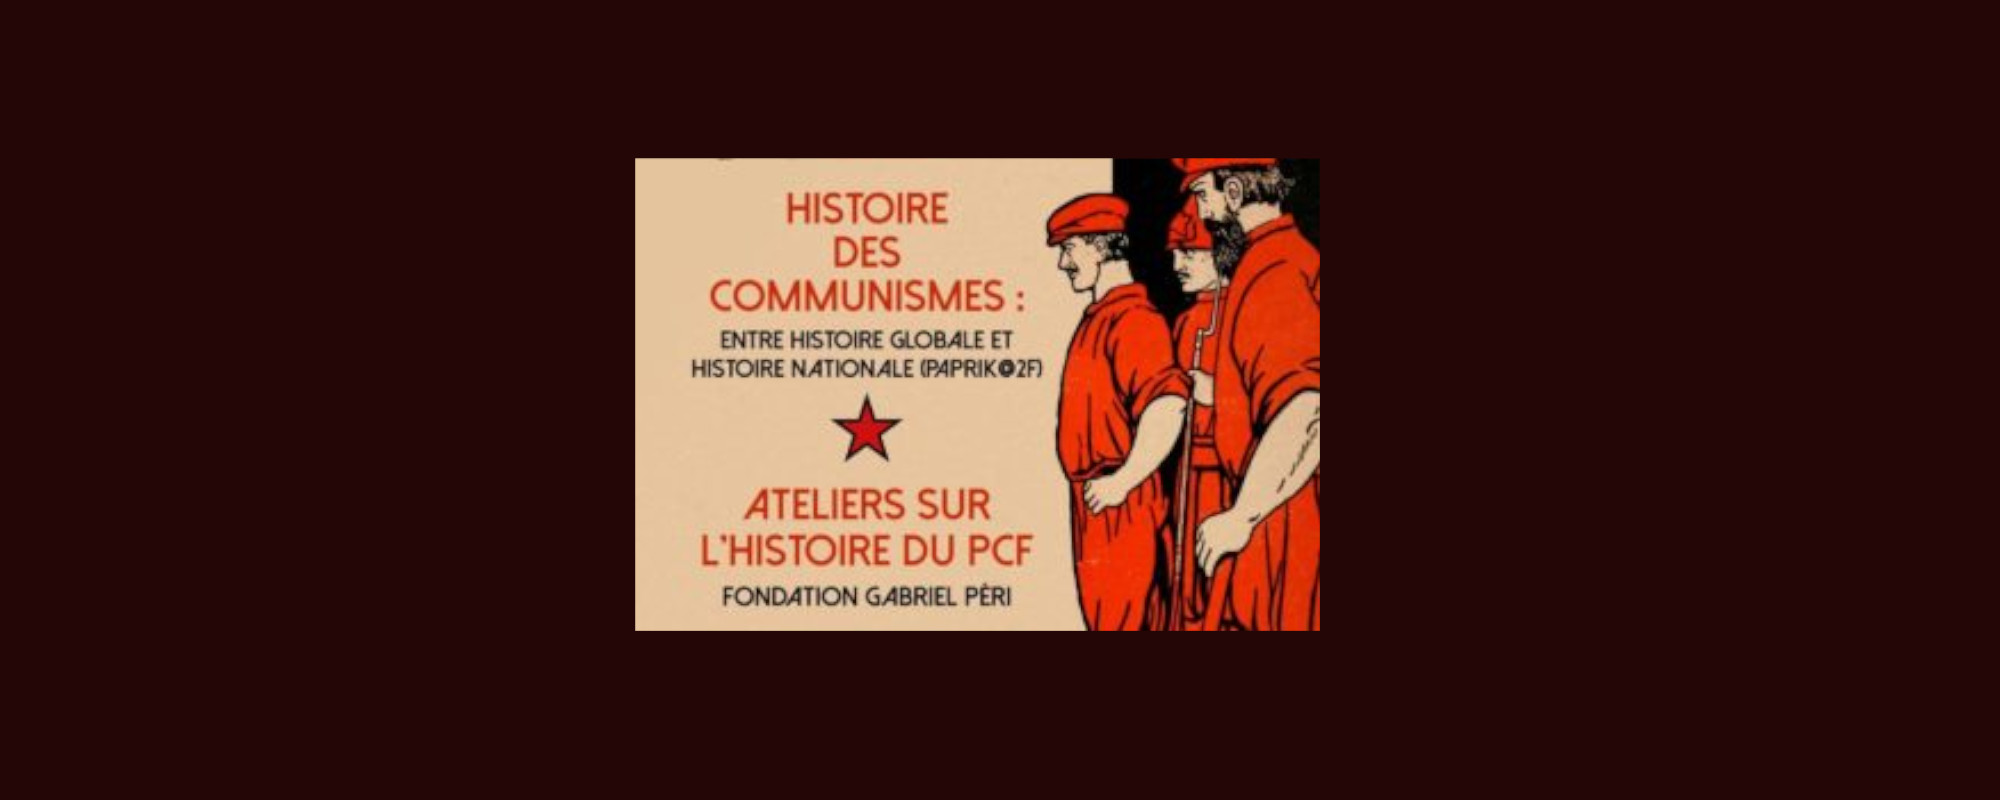 L’Internationale communiste en tant que réseau sociopolitique transnational